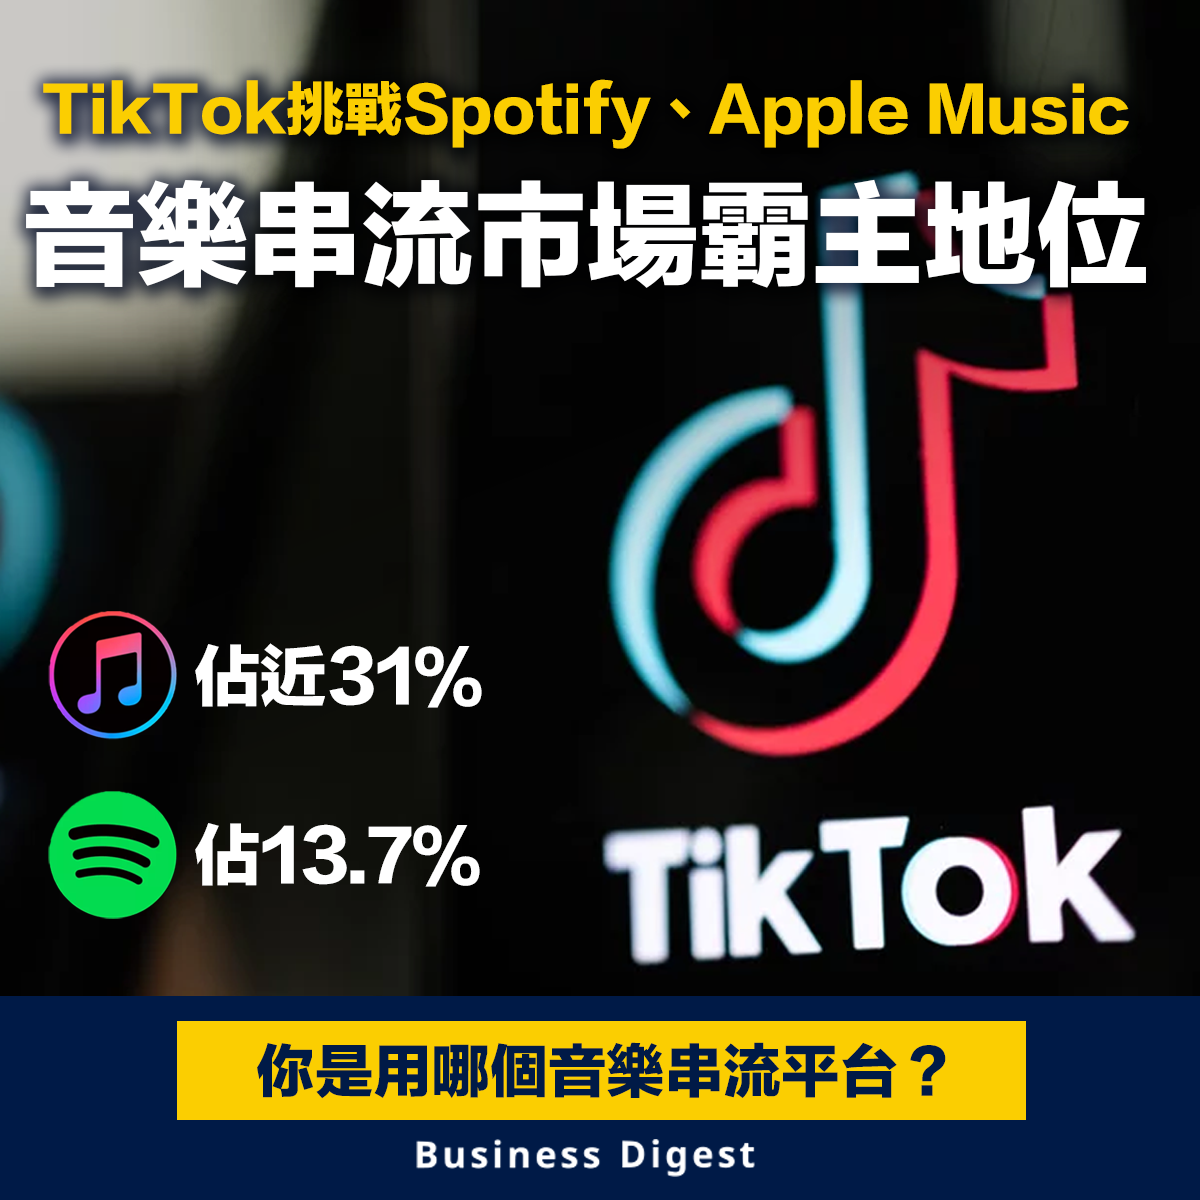 【商業熱話】TikTok挑戰Spotify、Apple Music的音樂串流市場霸主地位